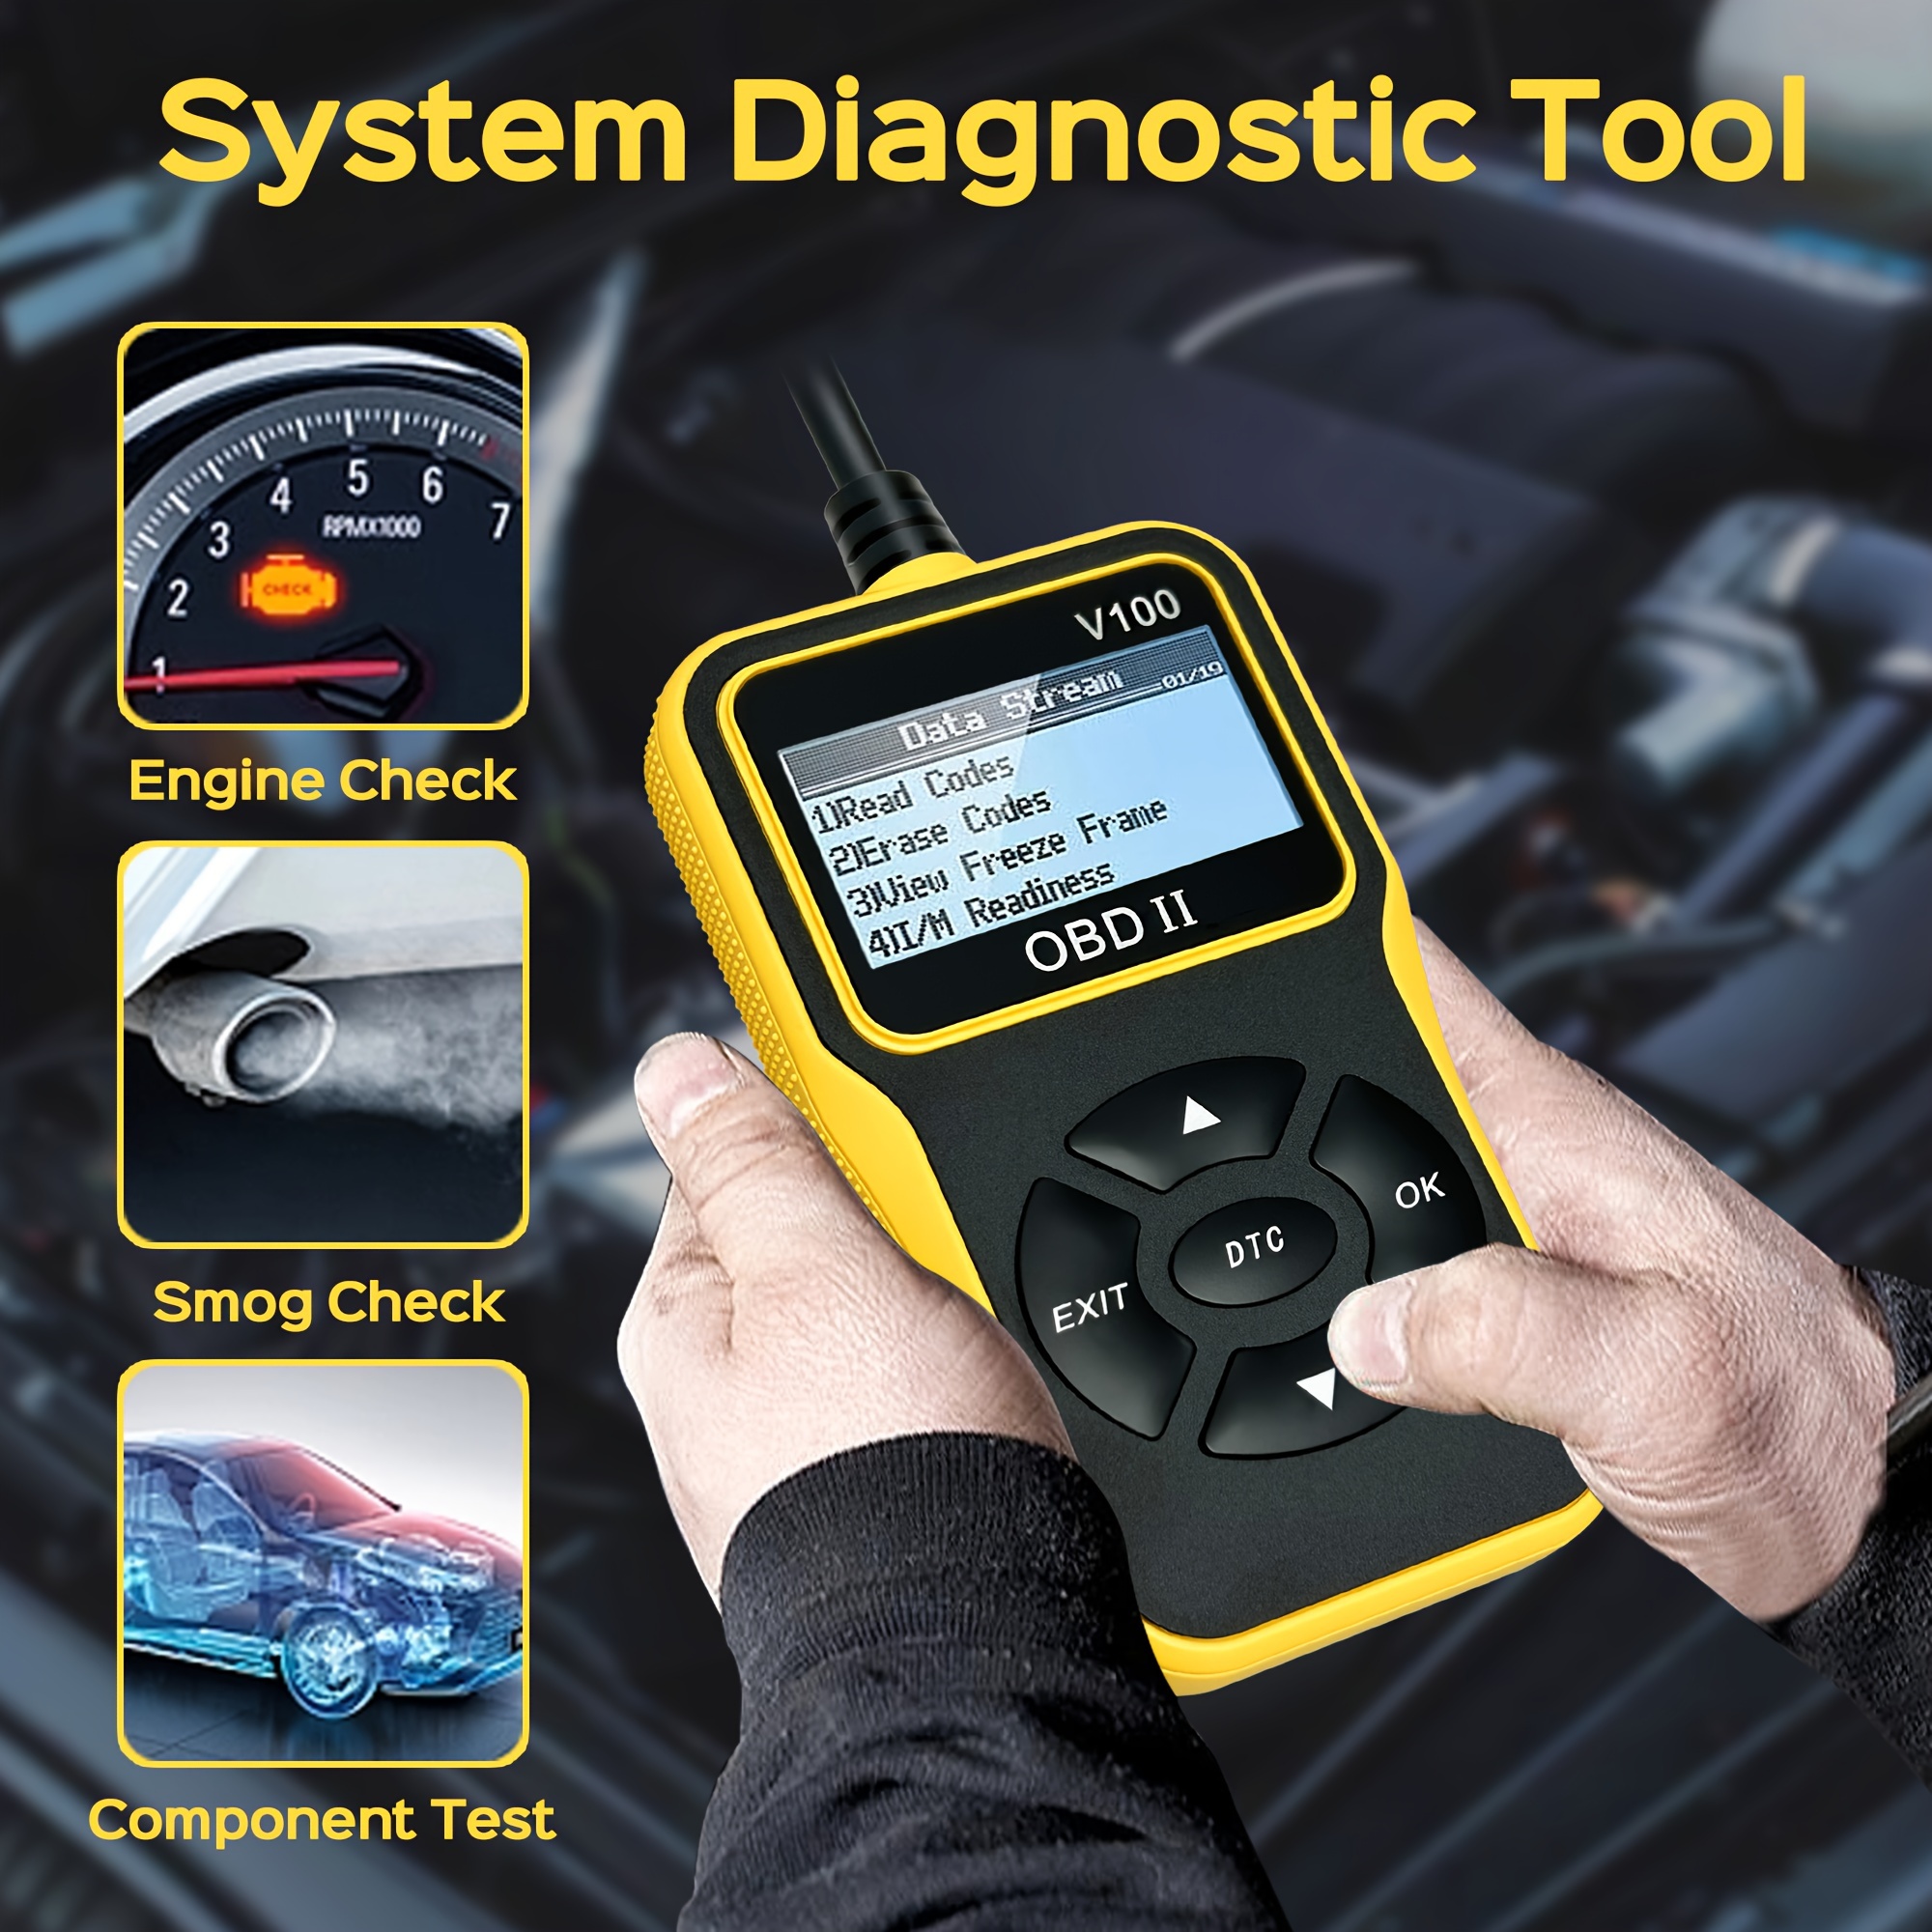 Car OBD2 Scanner, Code Reader Engine Fault Code Reader Scanner Diagnostic  Scan Tool For All OBD II Protocol Cars Since 1996